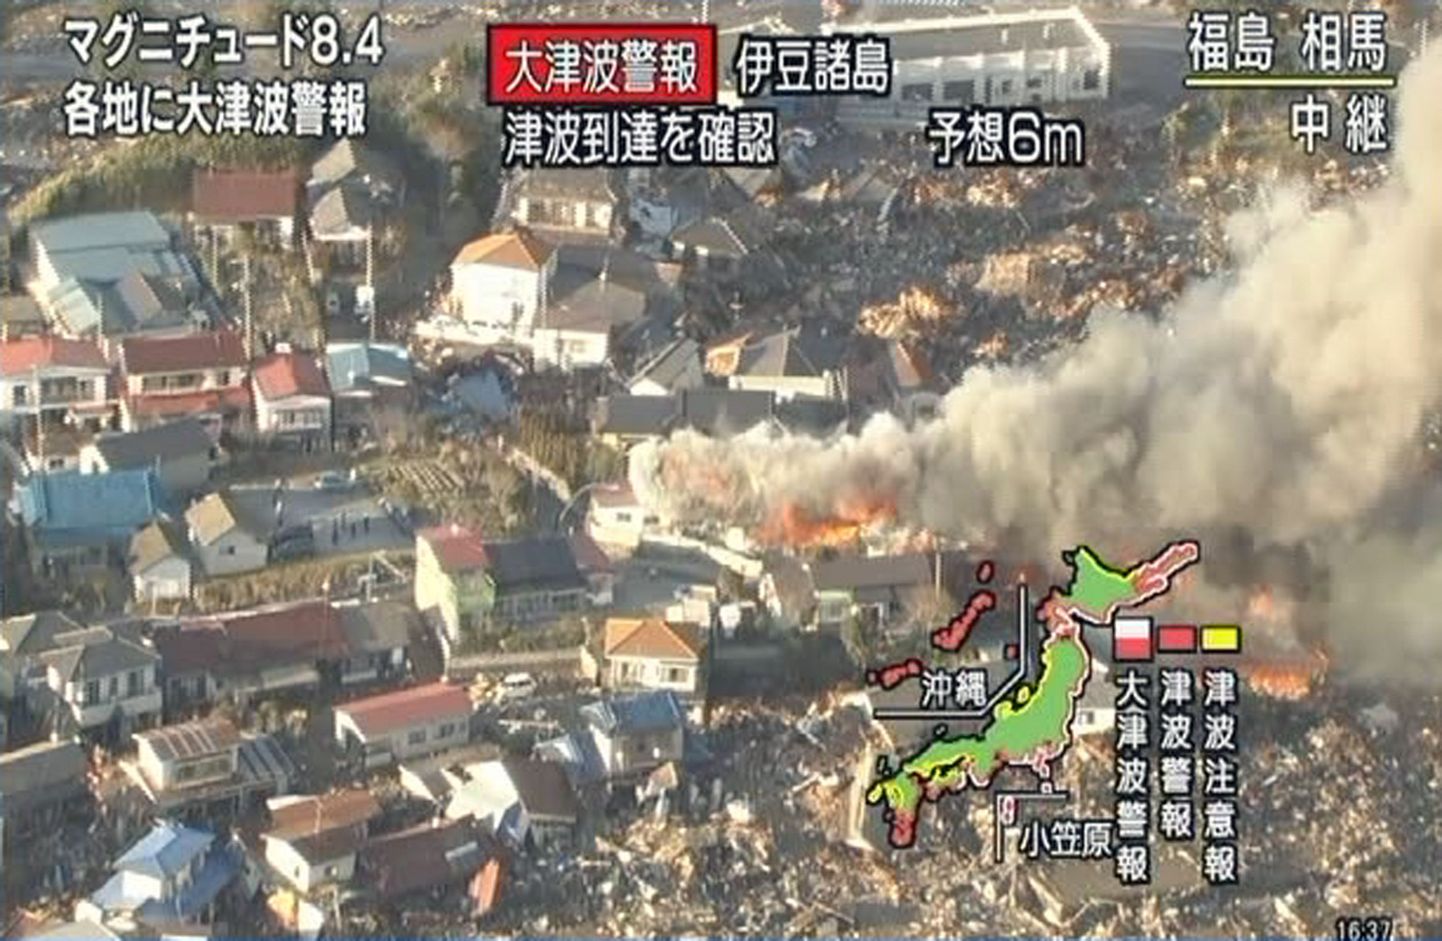 Pilt Põhja-Jaapani linast Somast, kus maavärina tagajärjel hooned süttisid.